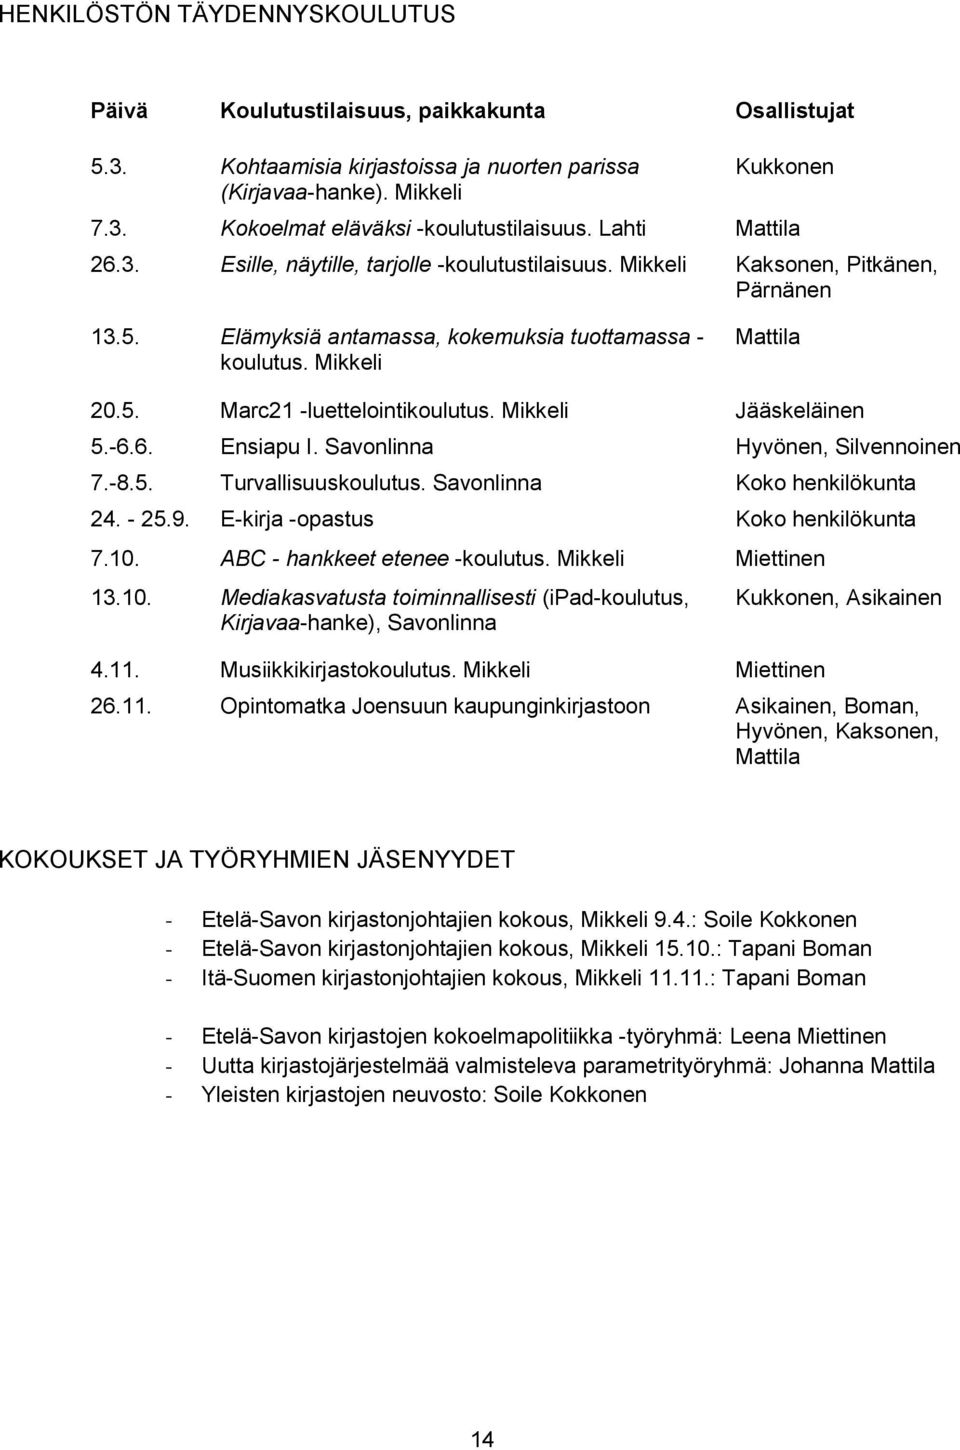 Mikkeli Jääskeläinen 5.-6.6. Ensiapu I. Savonlinna Hyvönen, Silvennoinen 7.-8.5. Turvallisuuskoulutus. Savonlinna Koko henkilökunta 24. - 25.9. E-kirja -opastus Koko henkilökunta 7.10.